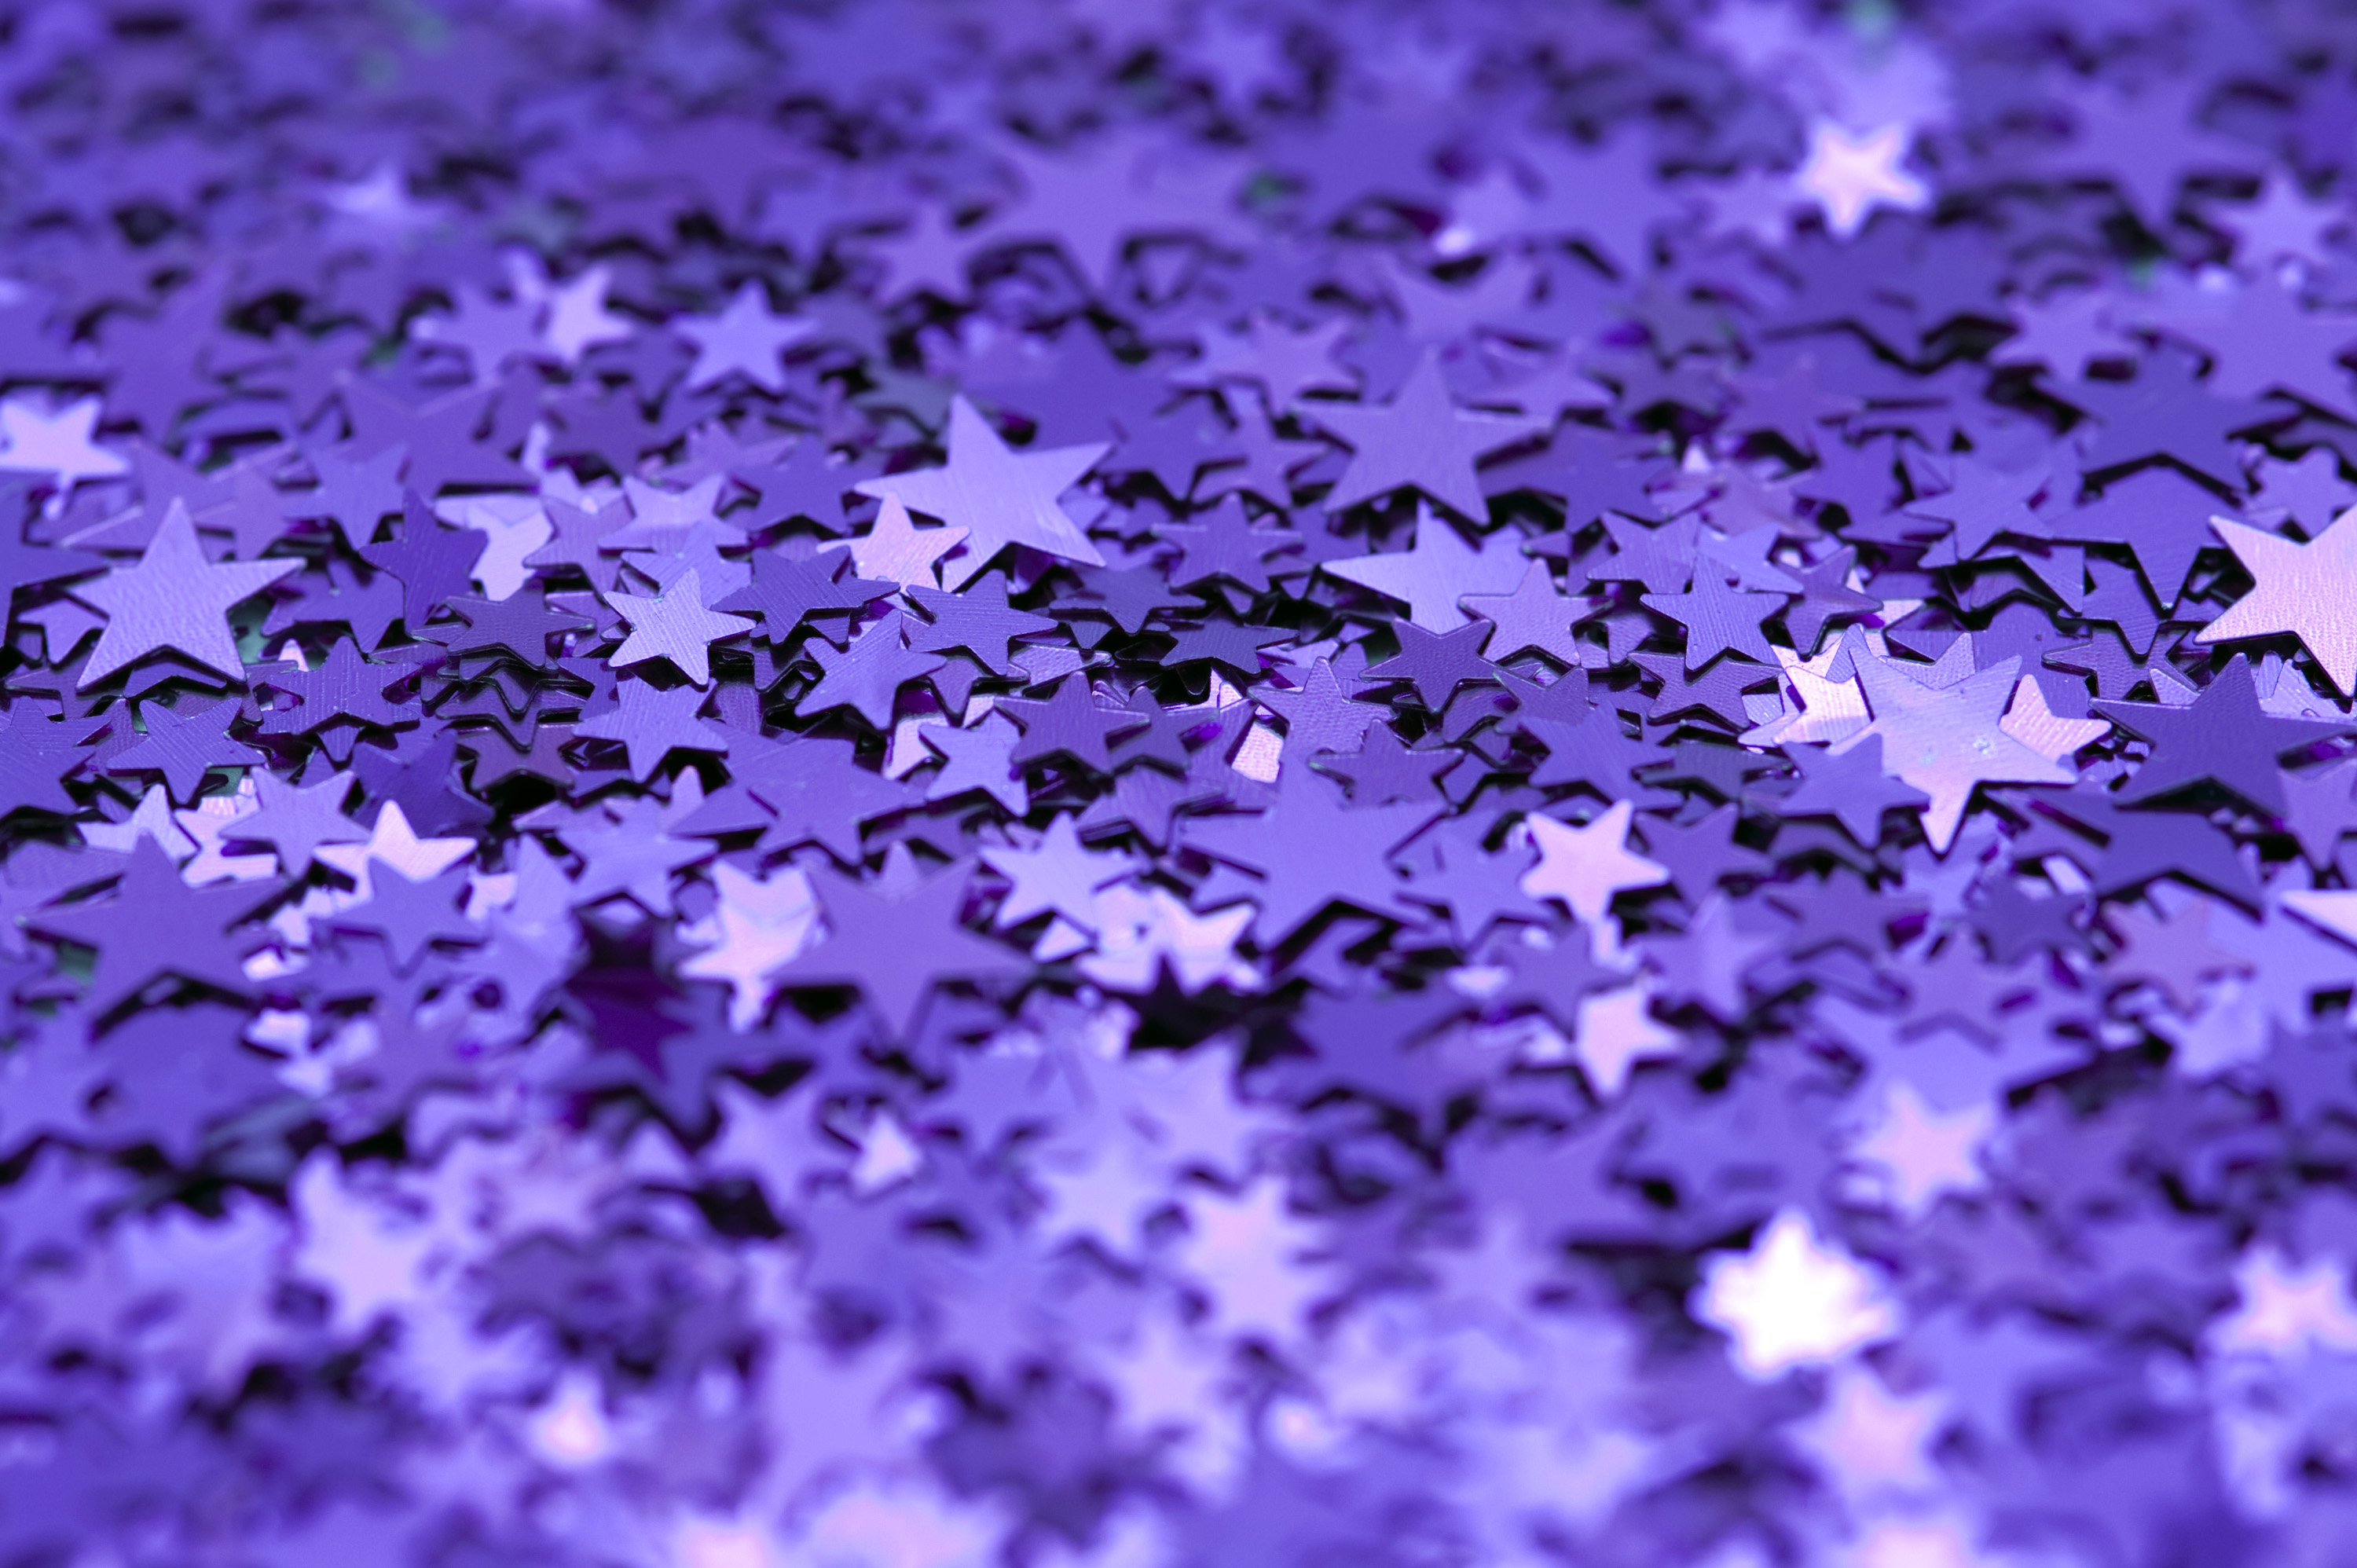 Download Original image of purple glitter backdrop [1116kB]